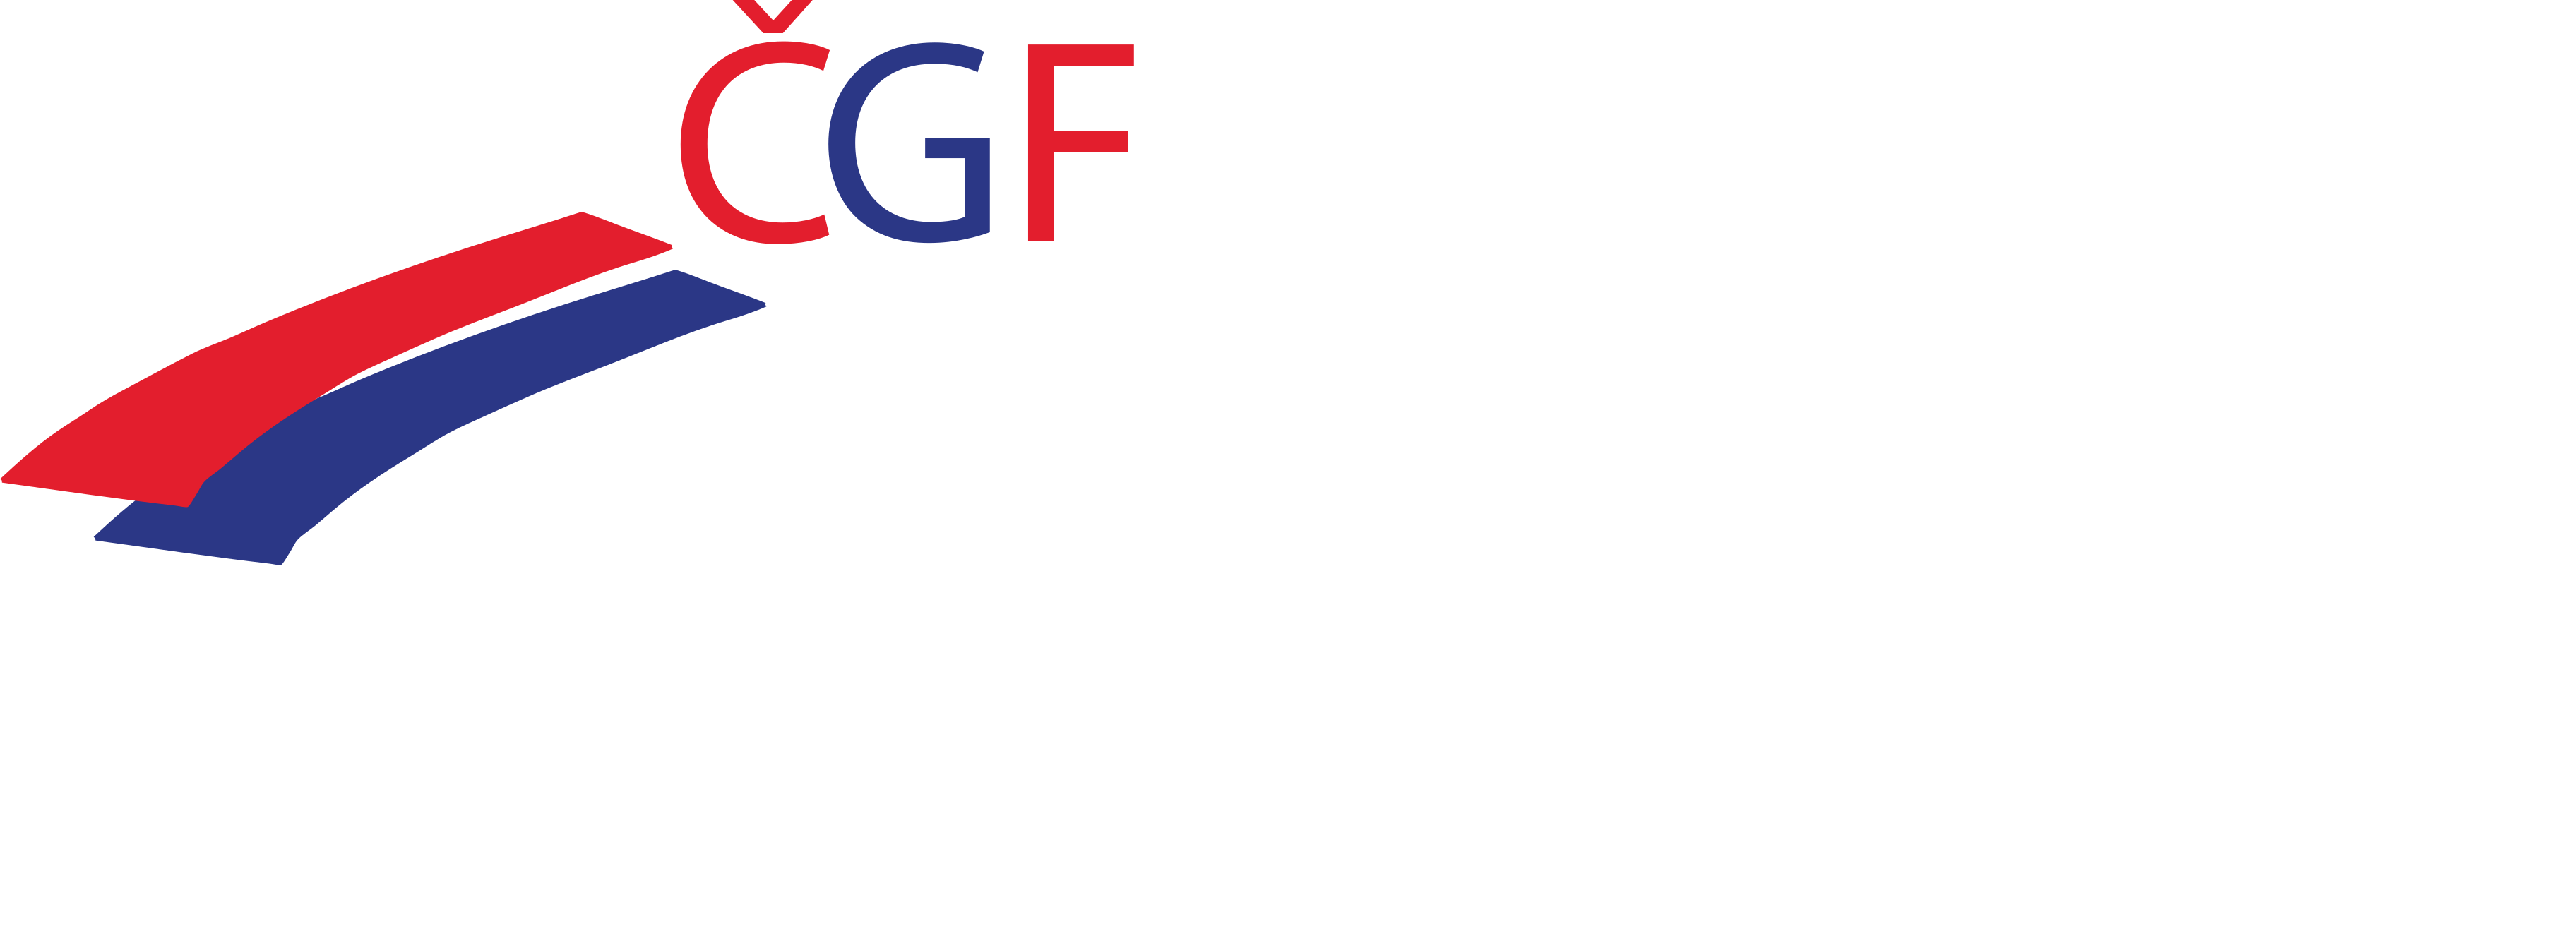 footer logo